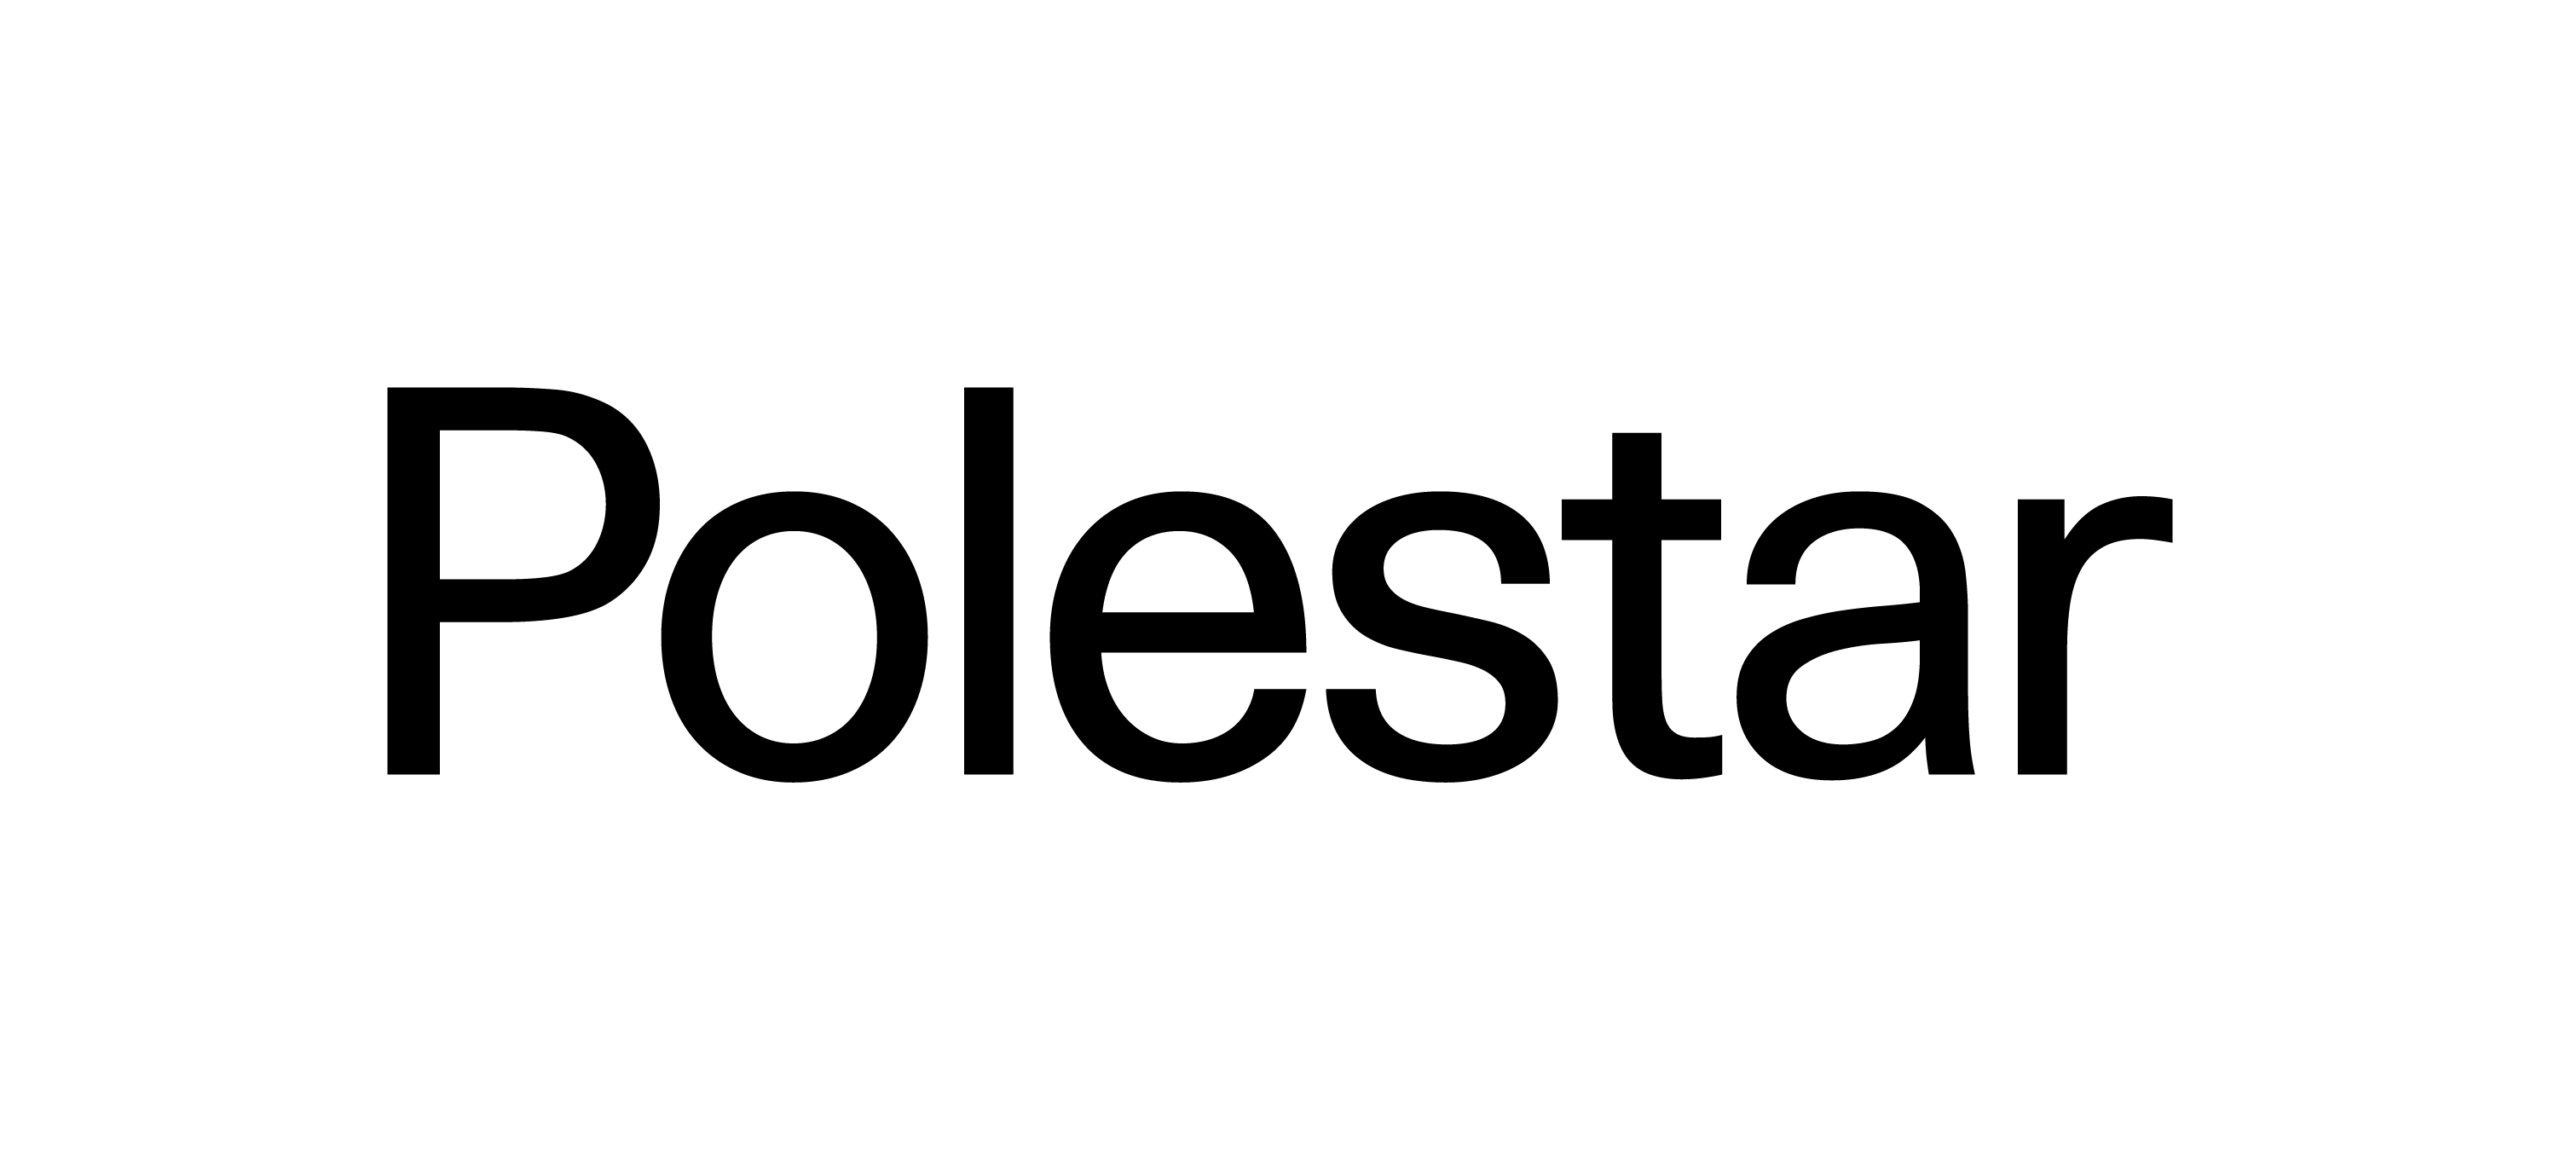 Polestar Walkin Interview For Freshers